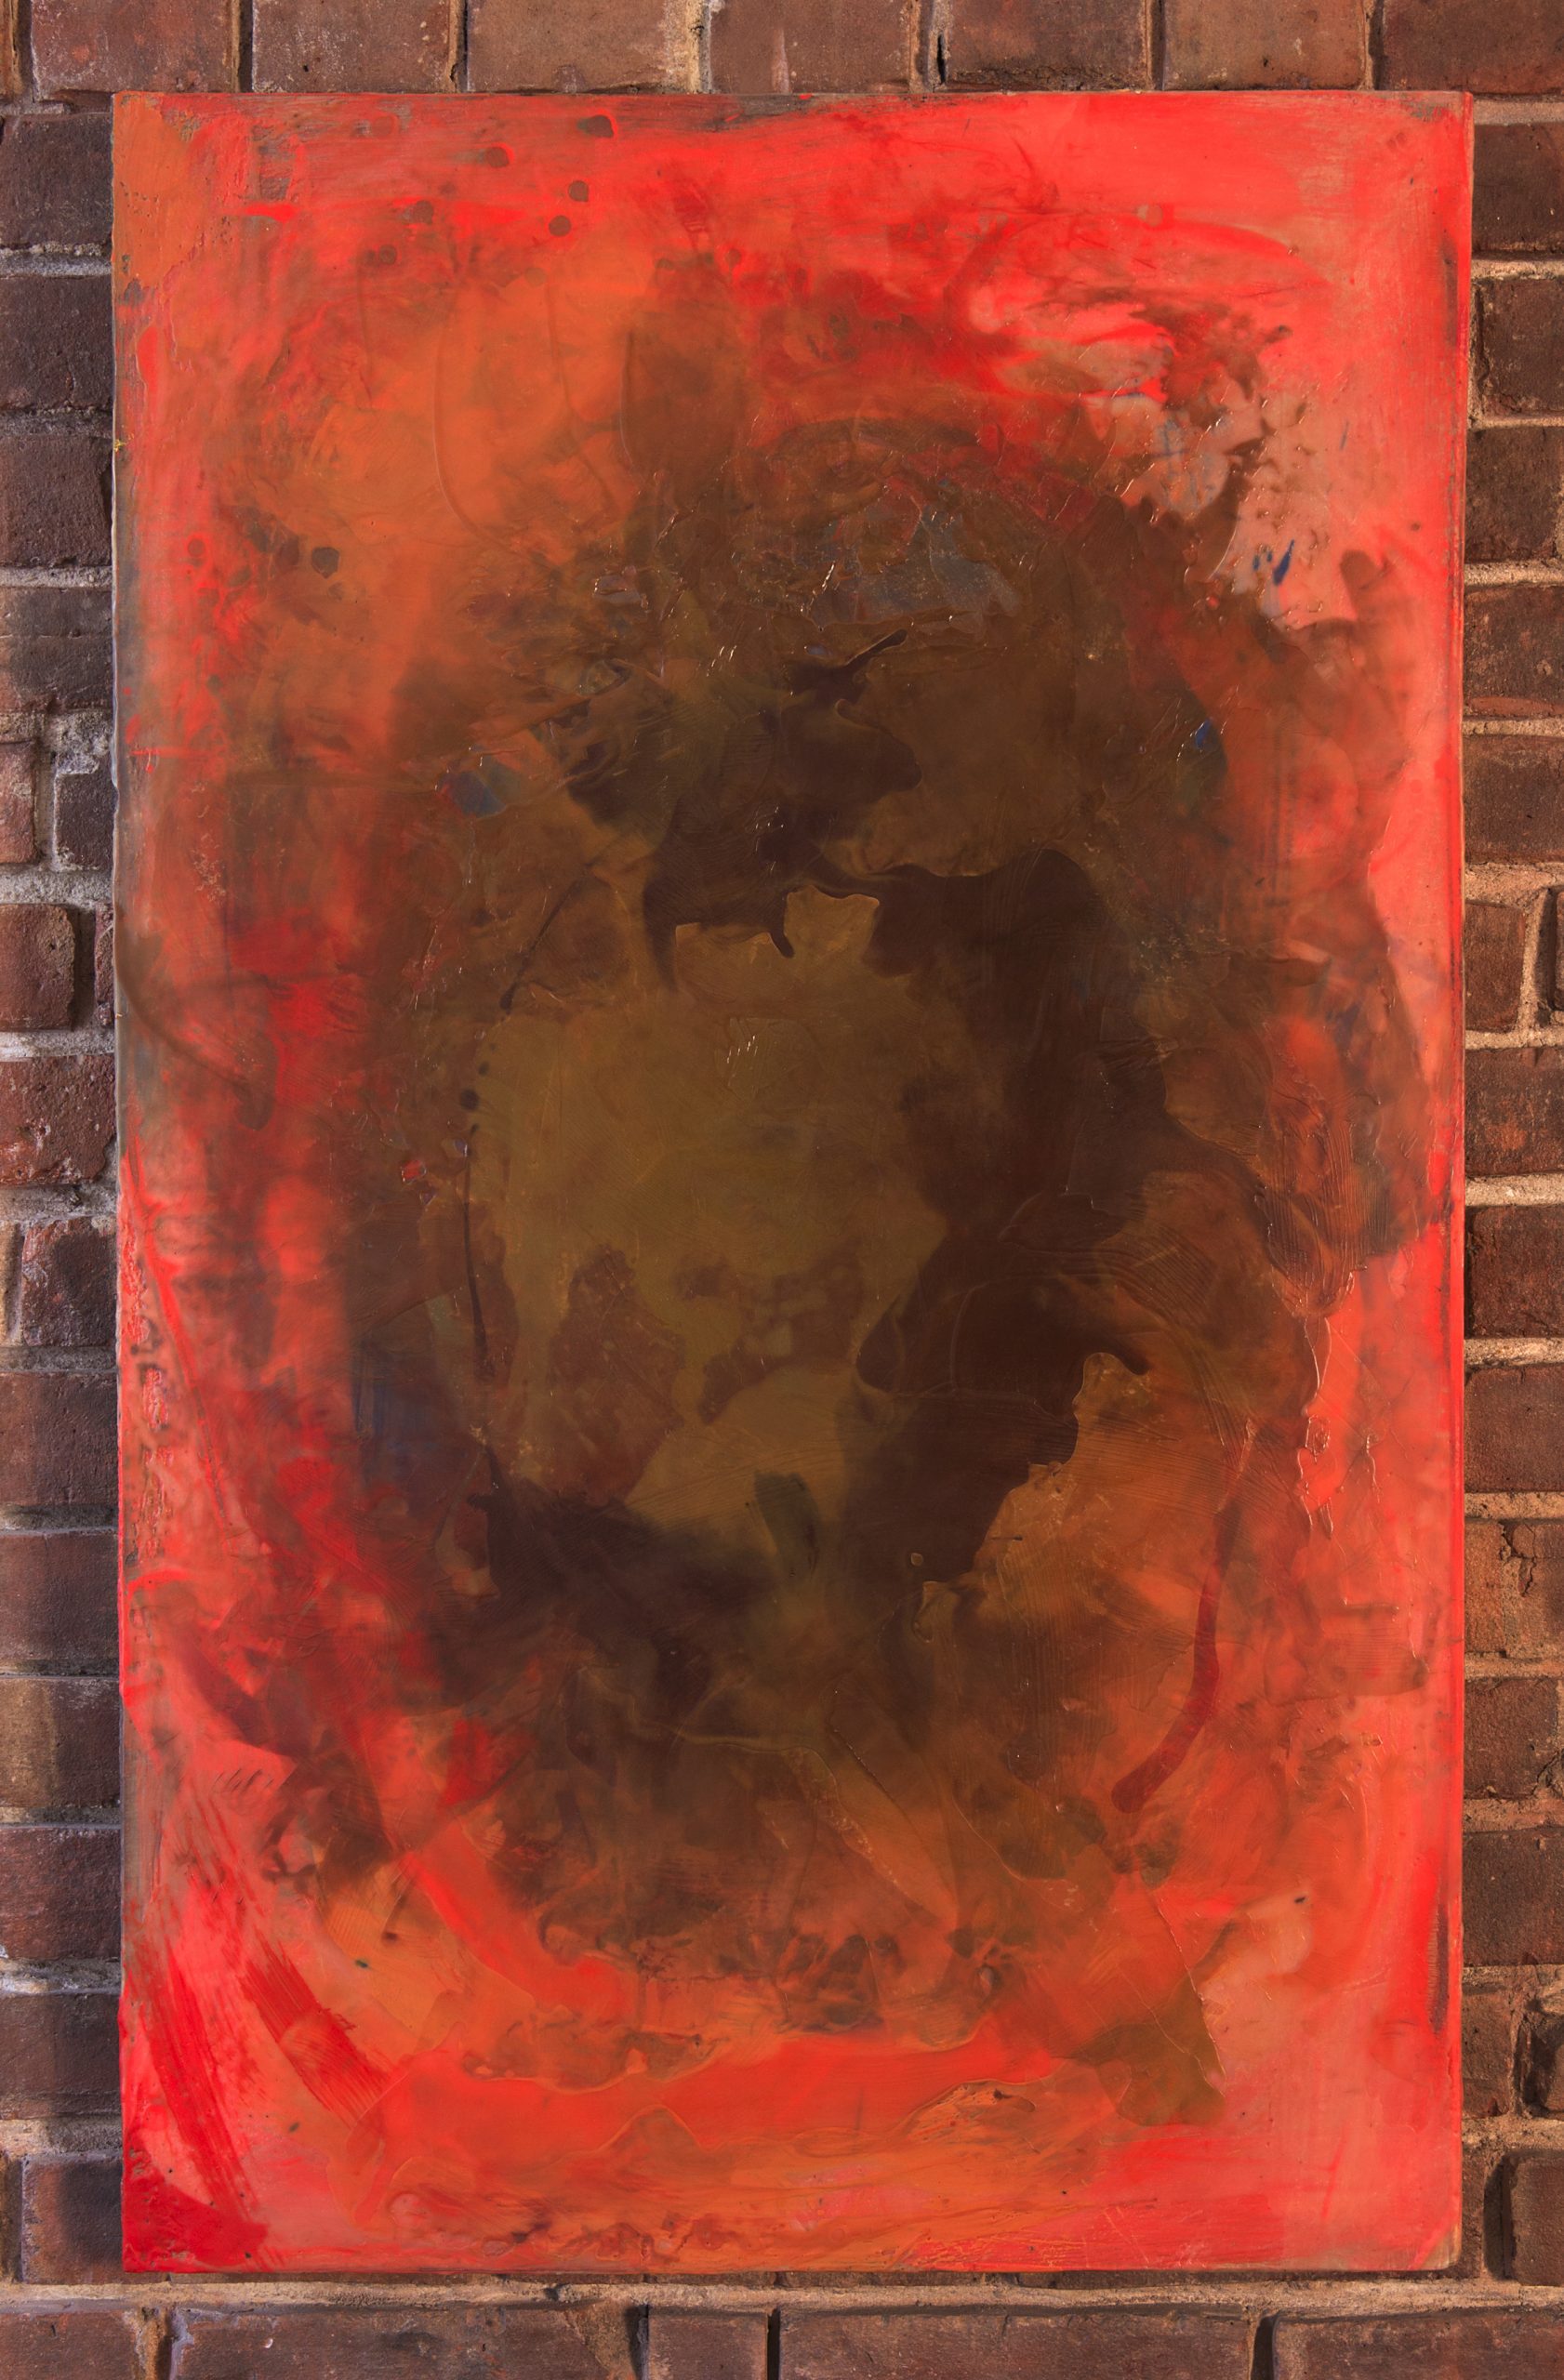 Encaustic Painting from Brown Series (2020) by Reuben Sinha